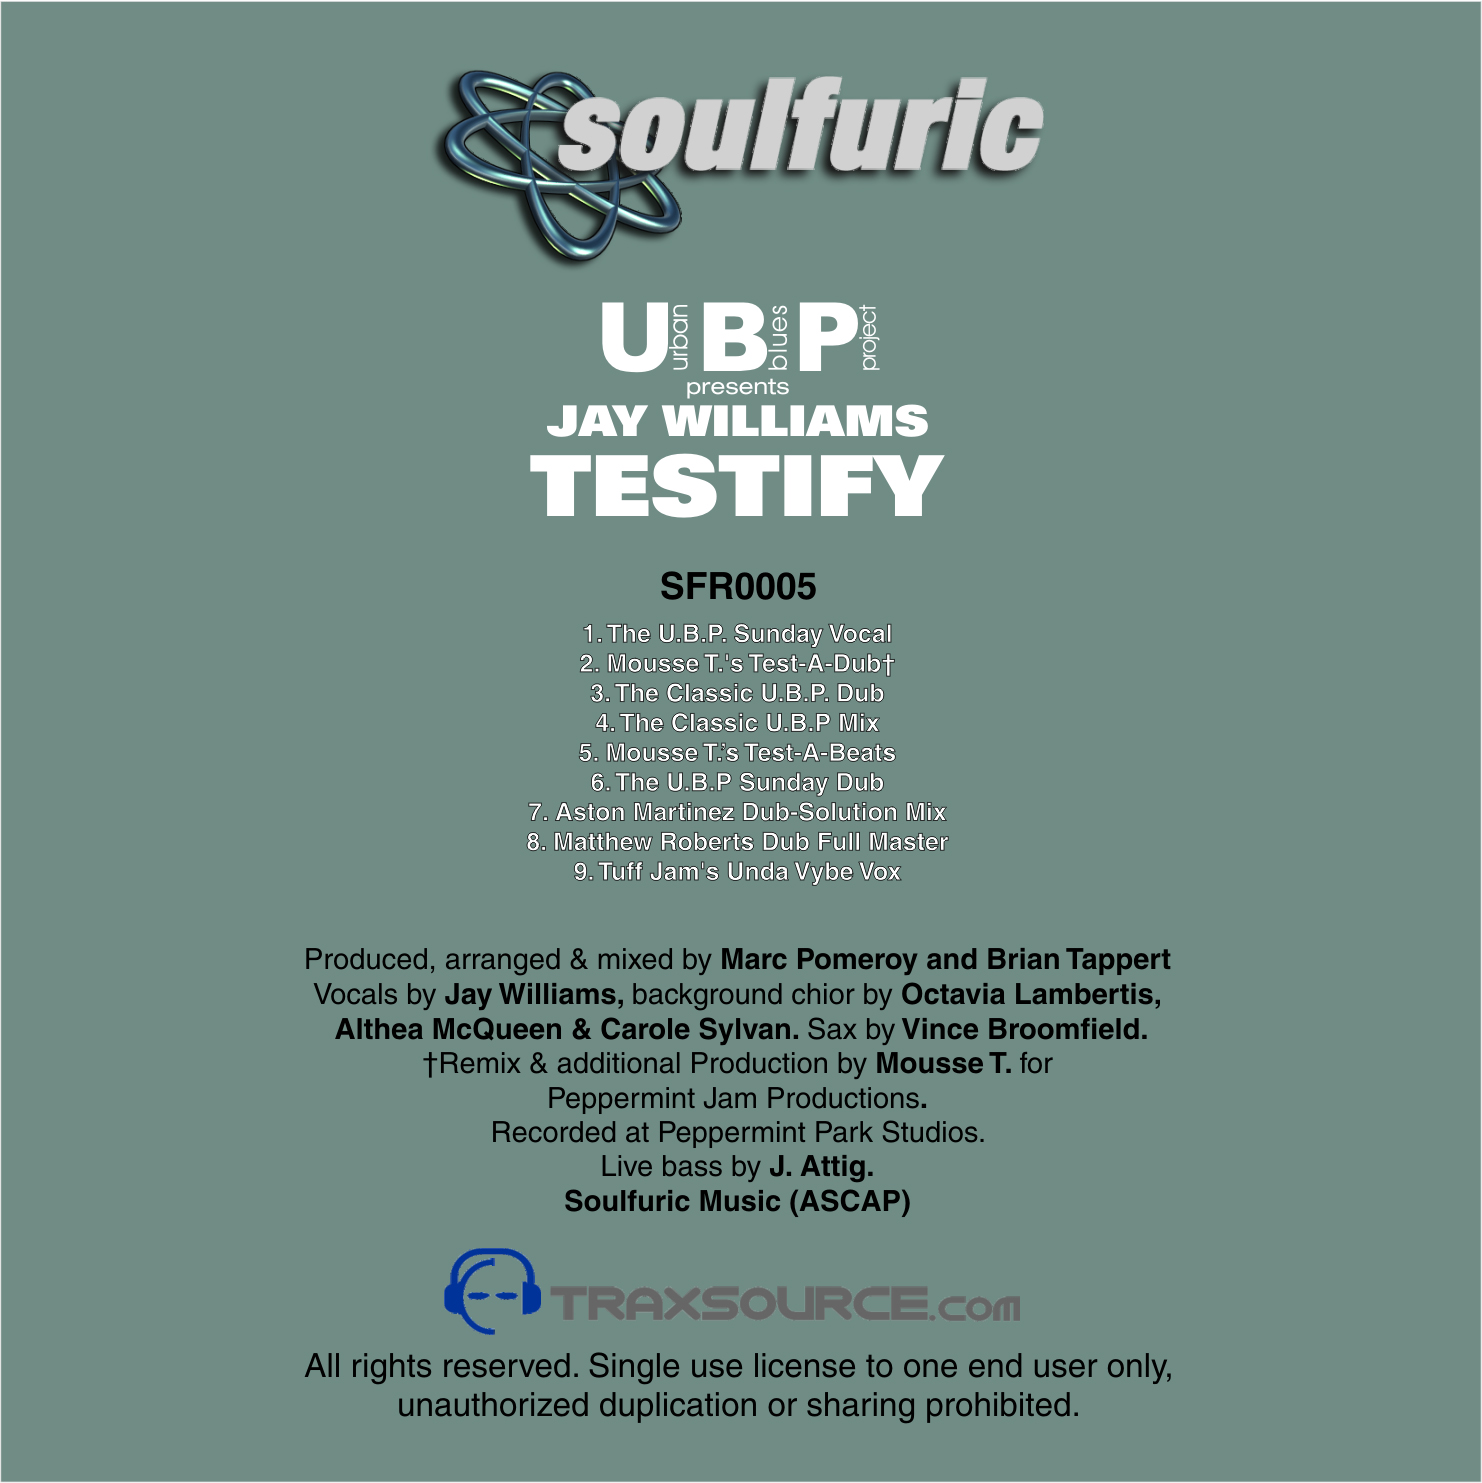 UBP Presents Jay Williams - Testify